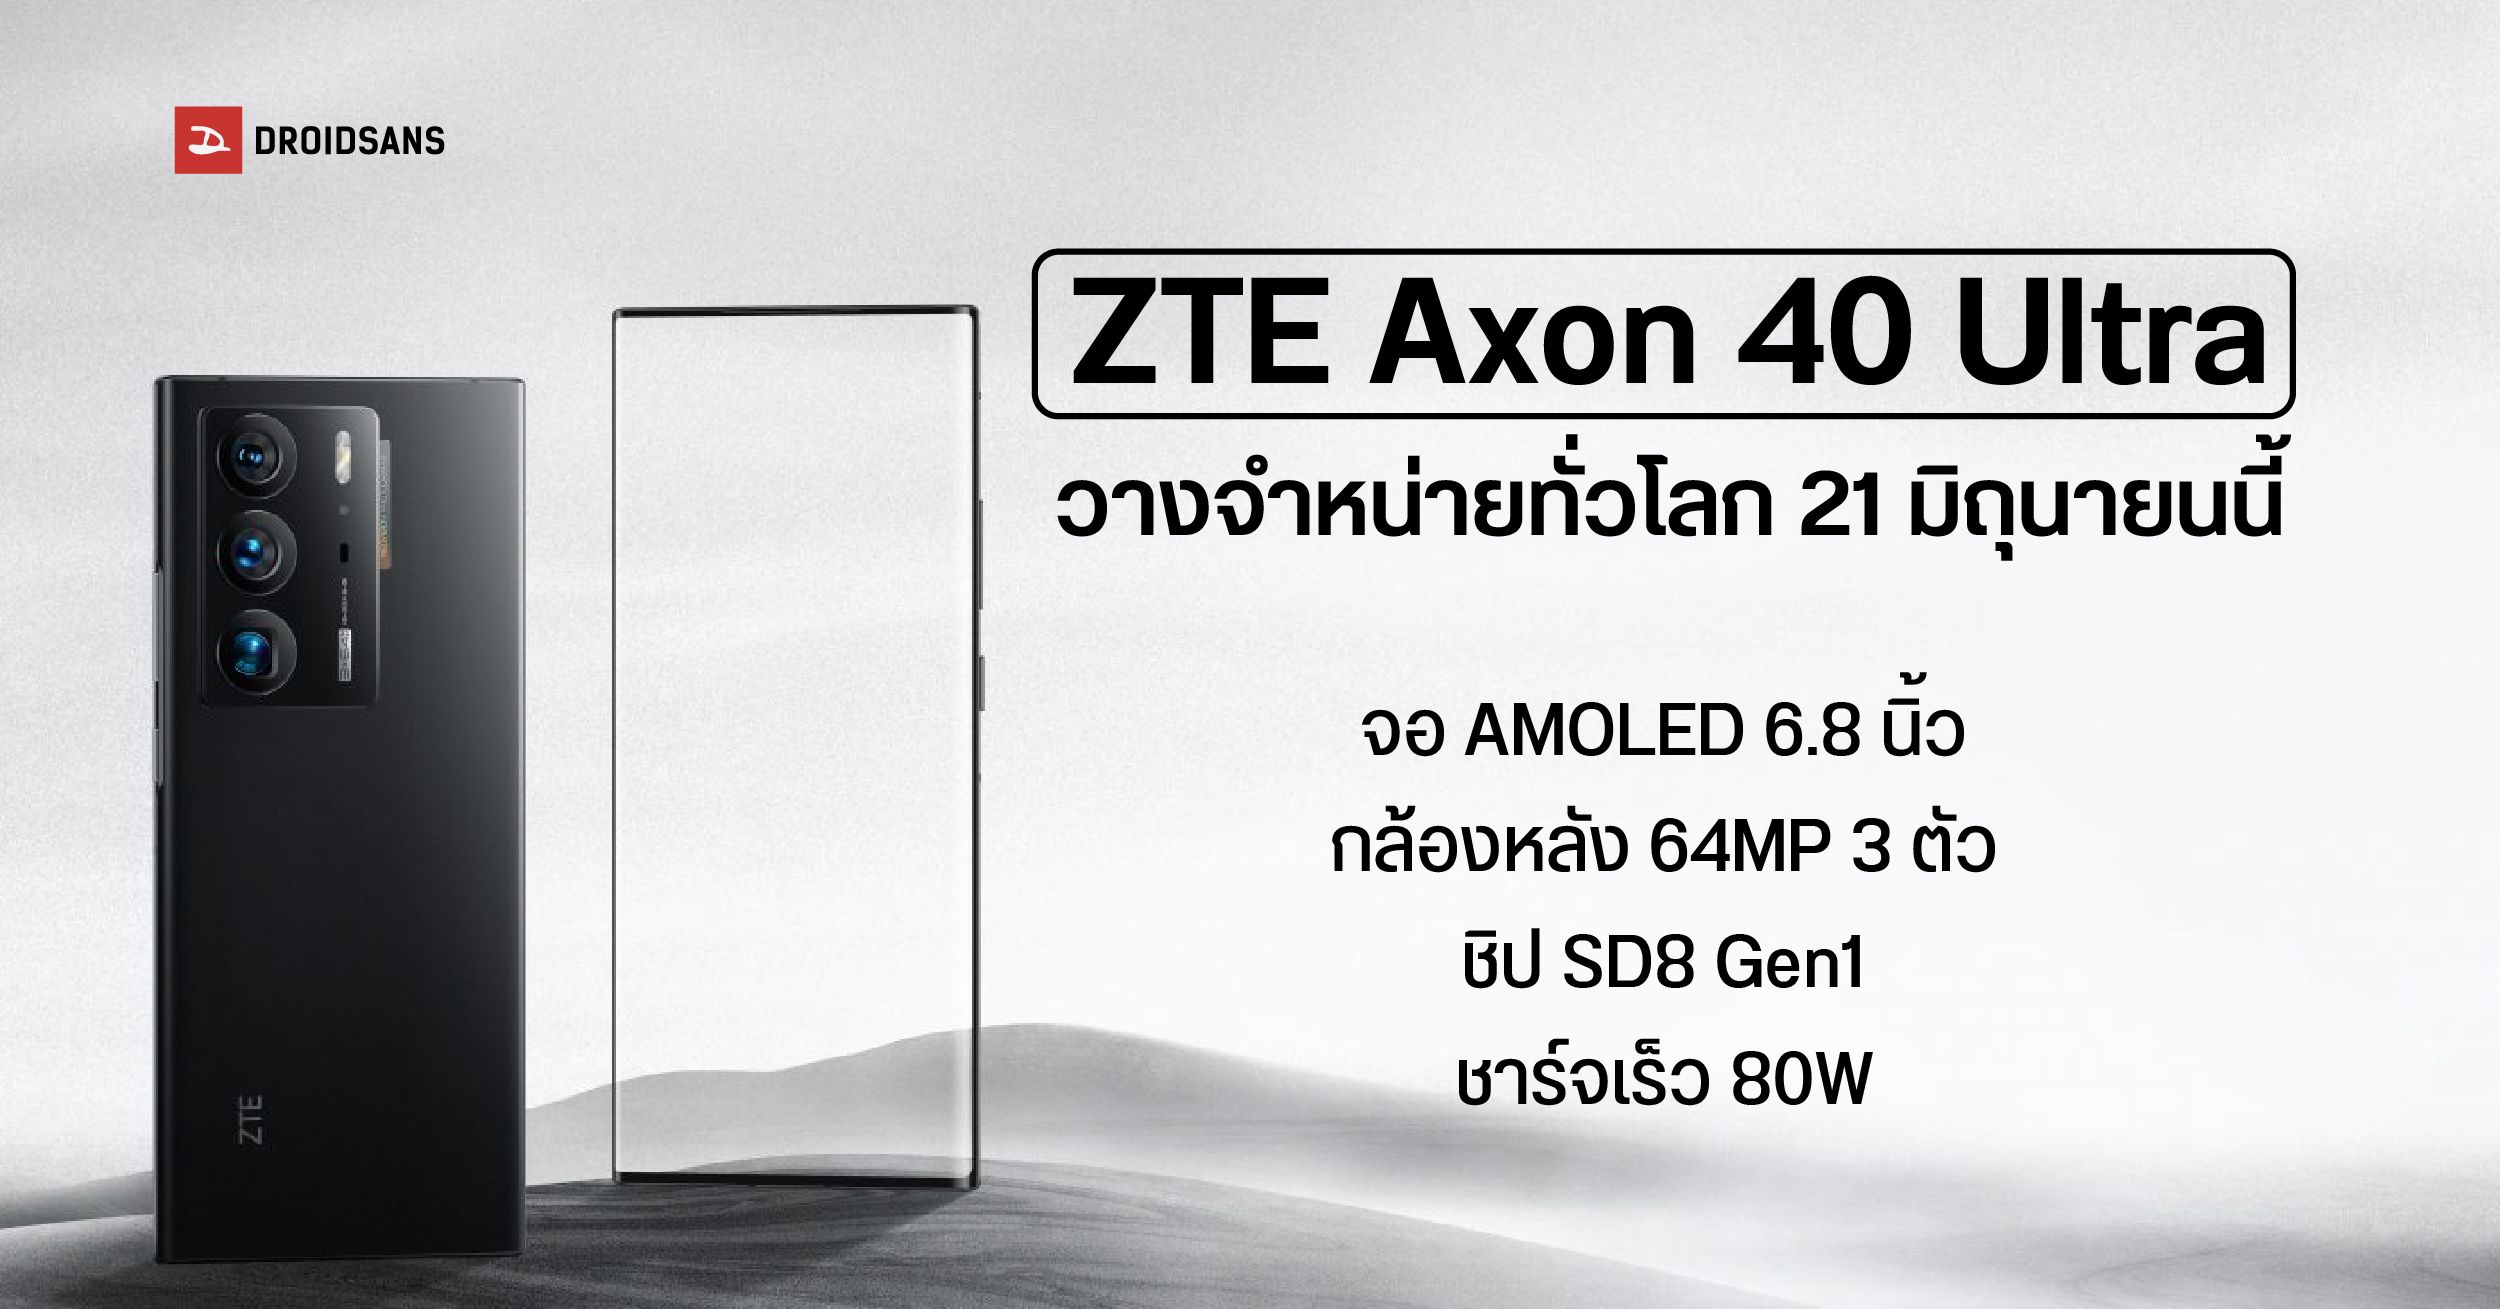 ZTE เตรียมวางขาย Axon 40 Ultra มือถือเรือธงสเปคโหด 21 มิถุนายนนี้